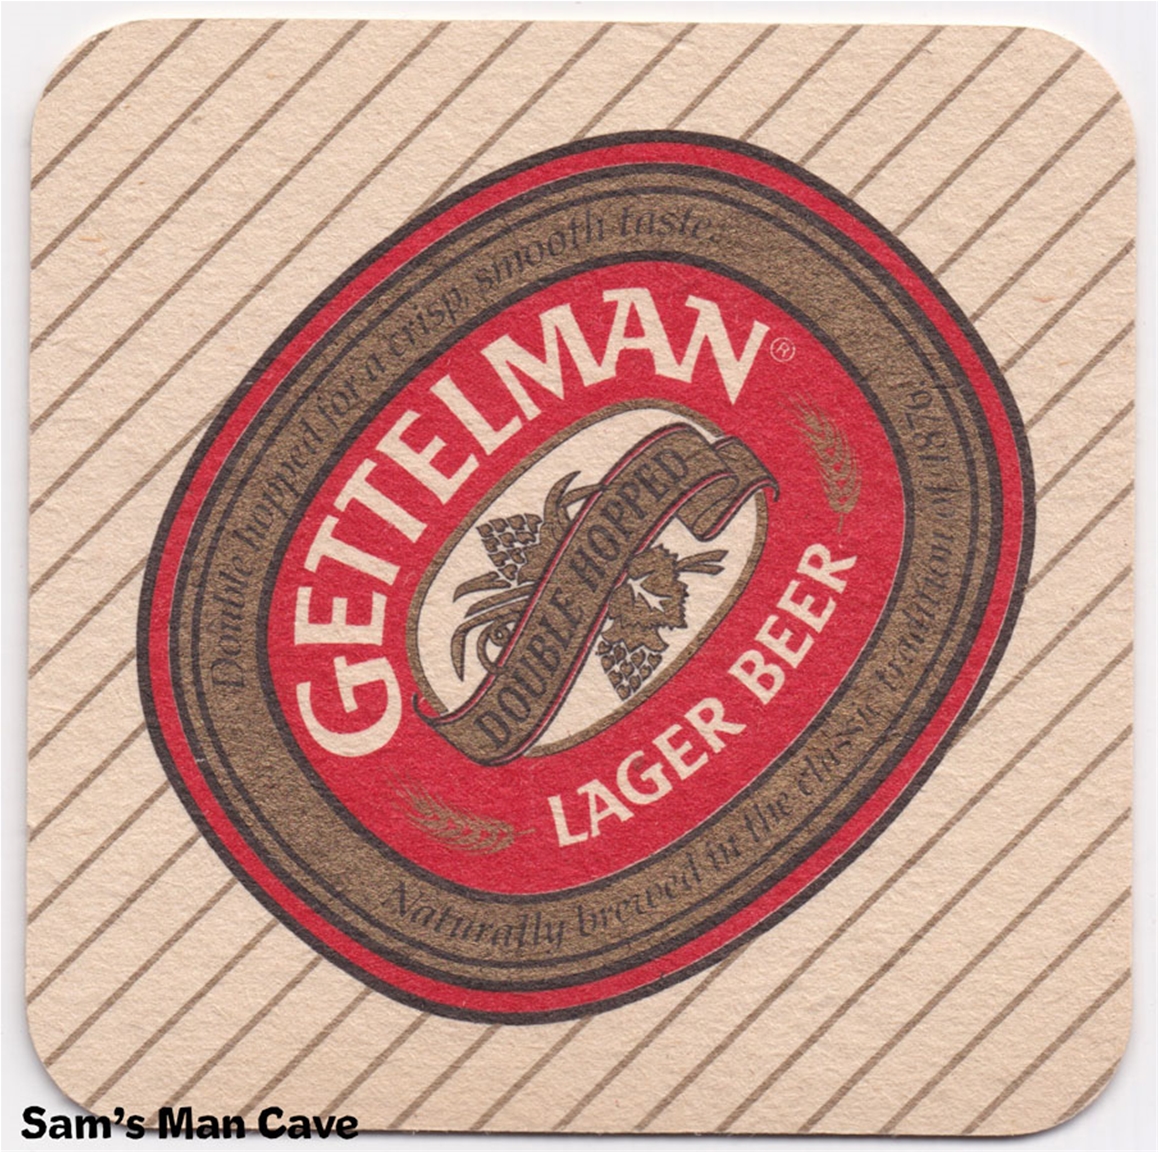 Gettelman Lager Beer Coaster